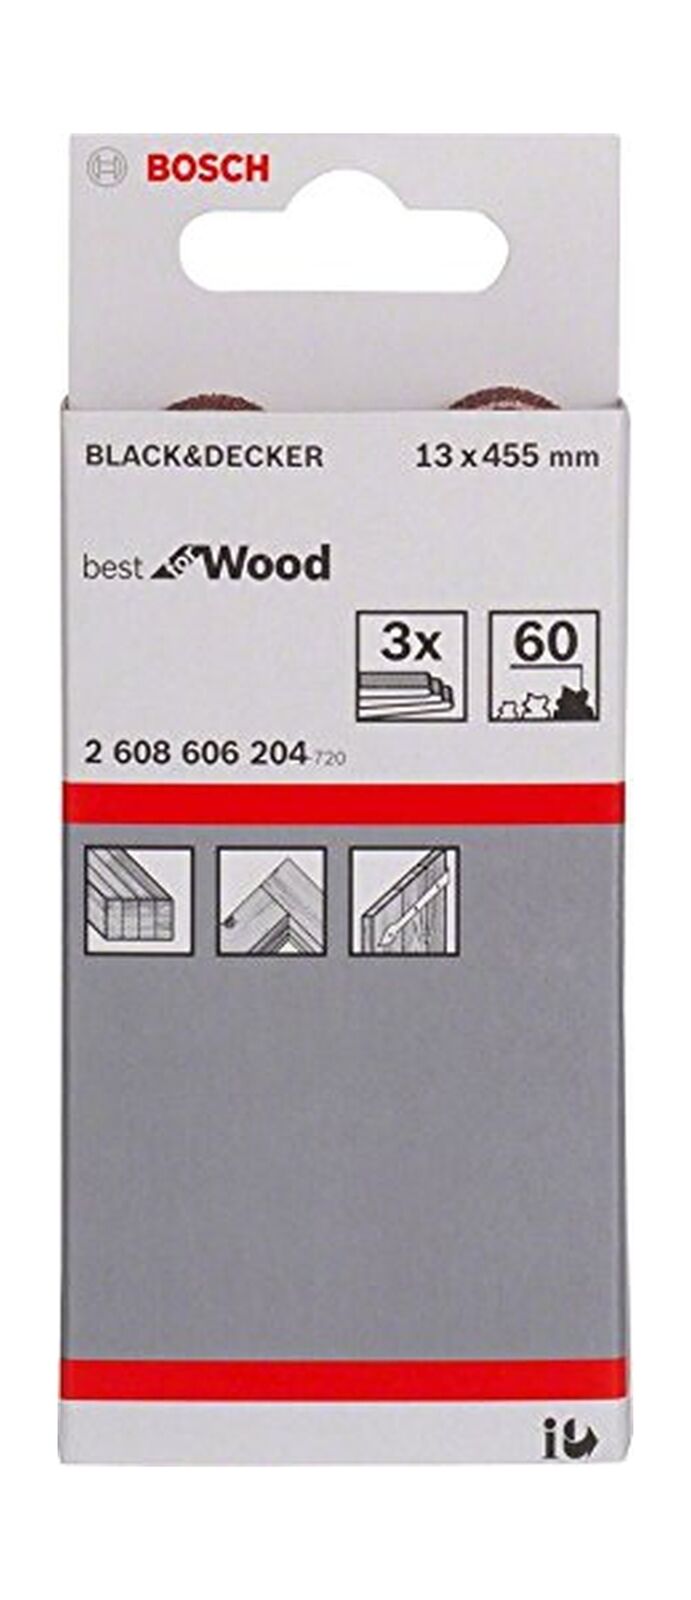 Ταινία λείανσης 13Χ457mm Νο60 για Hλεκτρικές Λίμες Best for Wood and Paint BOSCH